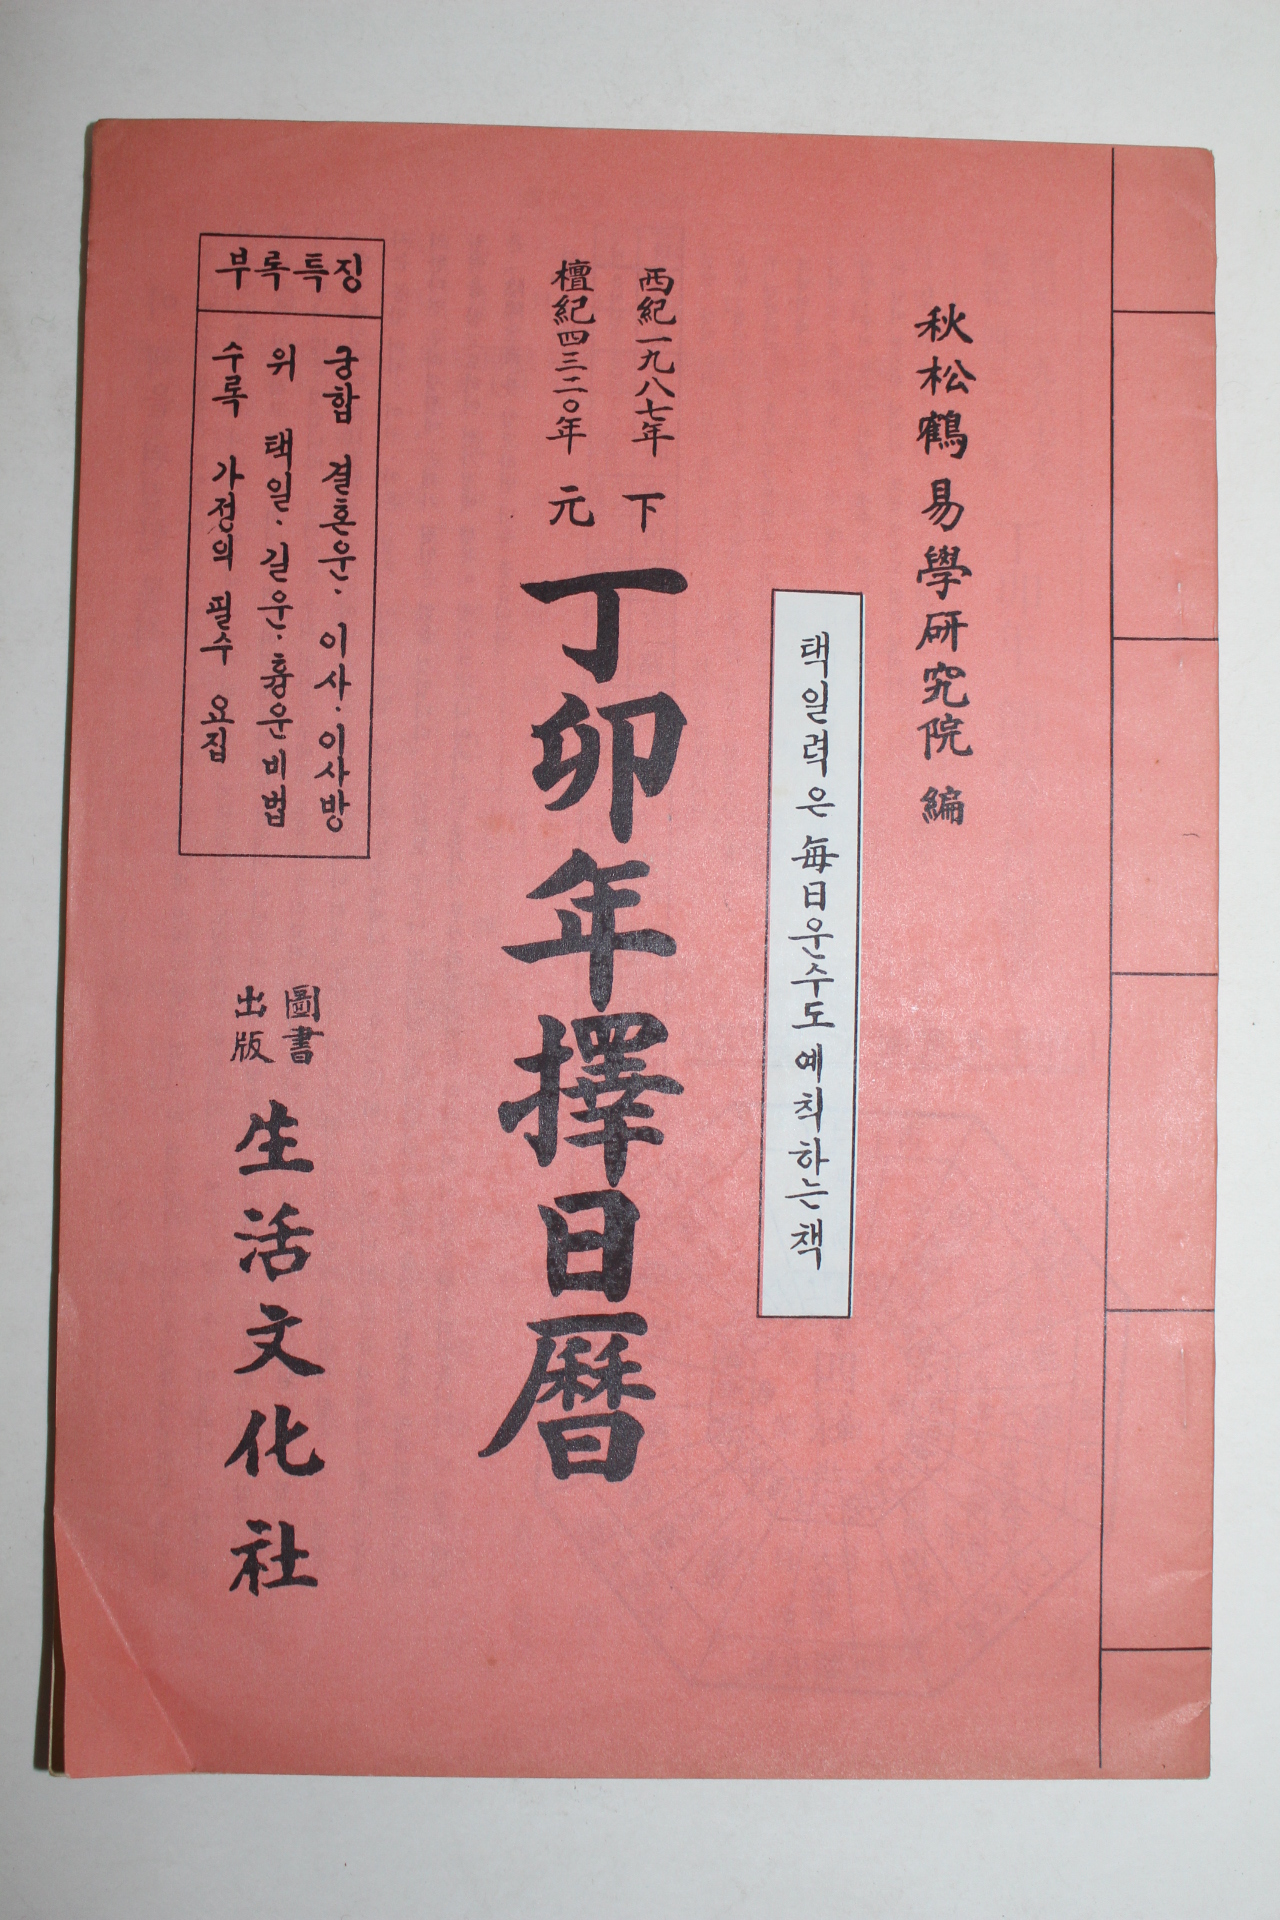 1987년 정묘년 택일력(擇日曆)